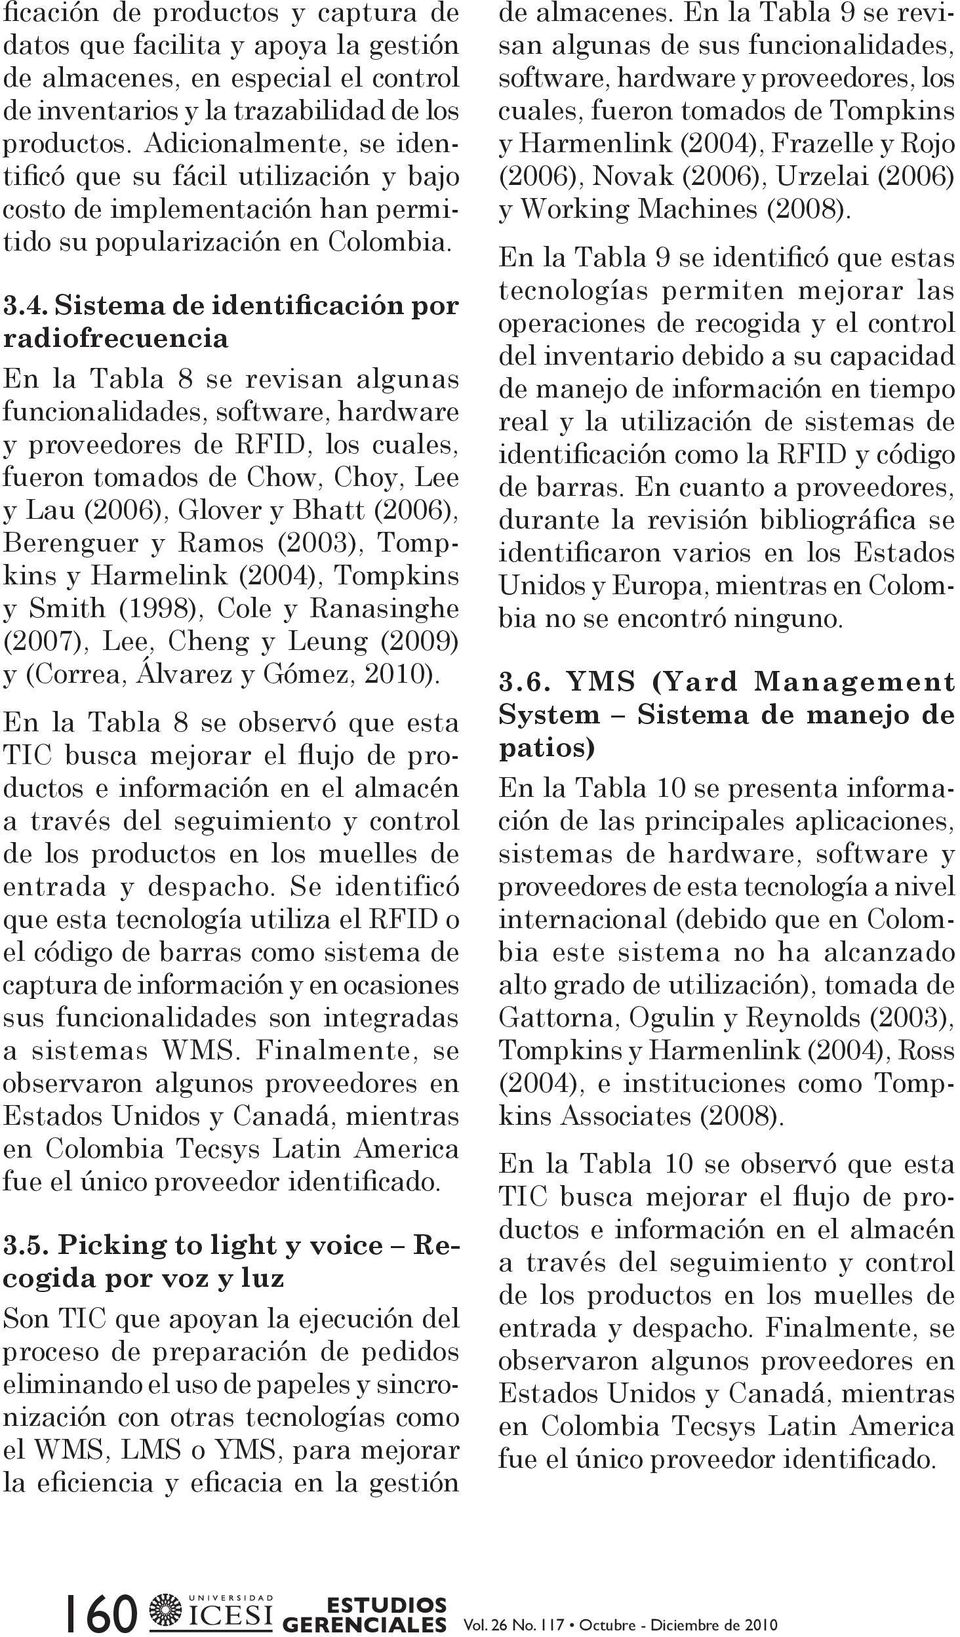 Sistema de identificación por radiofrecuencia En la Tabla 8 se revisan algunas funcionalidades, software, hardware y proveedores de RFID, los cuales, fueron tomados de Chow, Choy, Lee y Lau (2006),